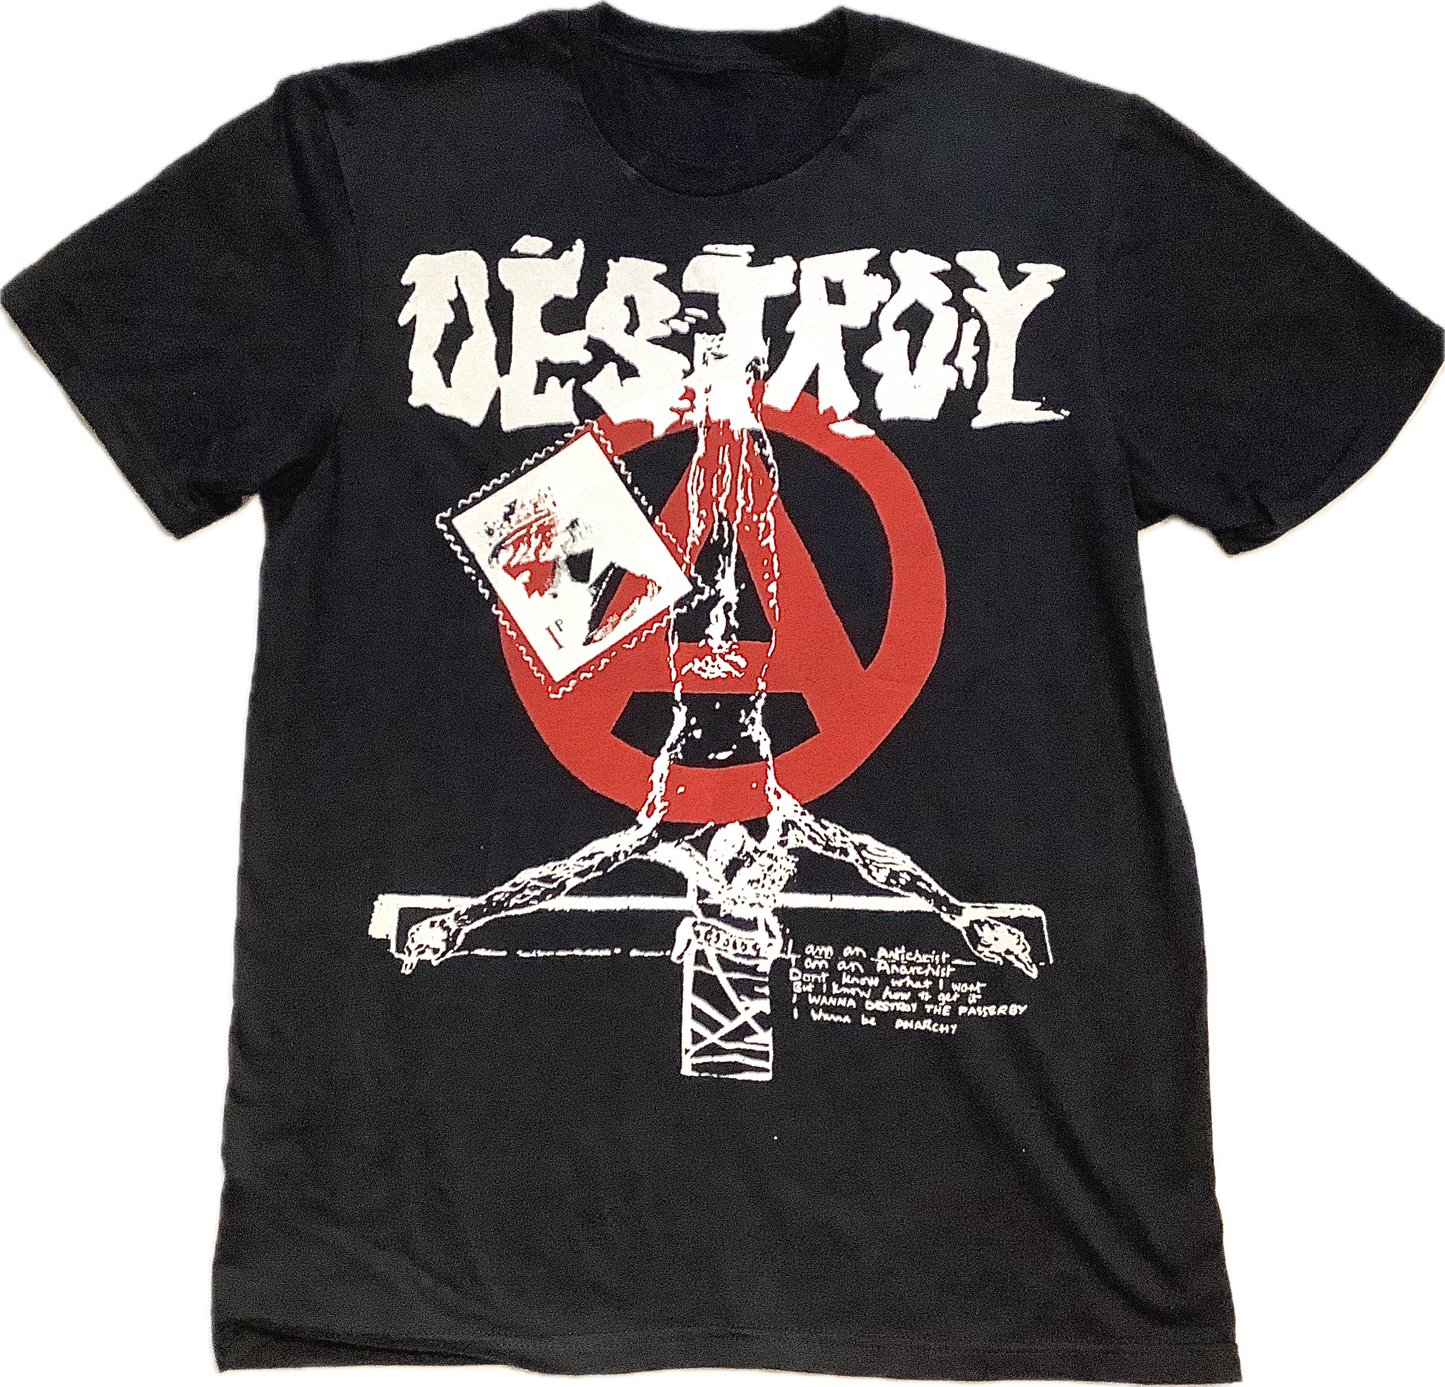 Destroy Anarchy A on black T-SHIRT or MUSLIN